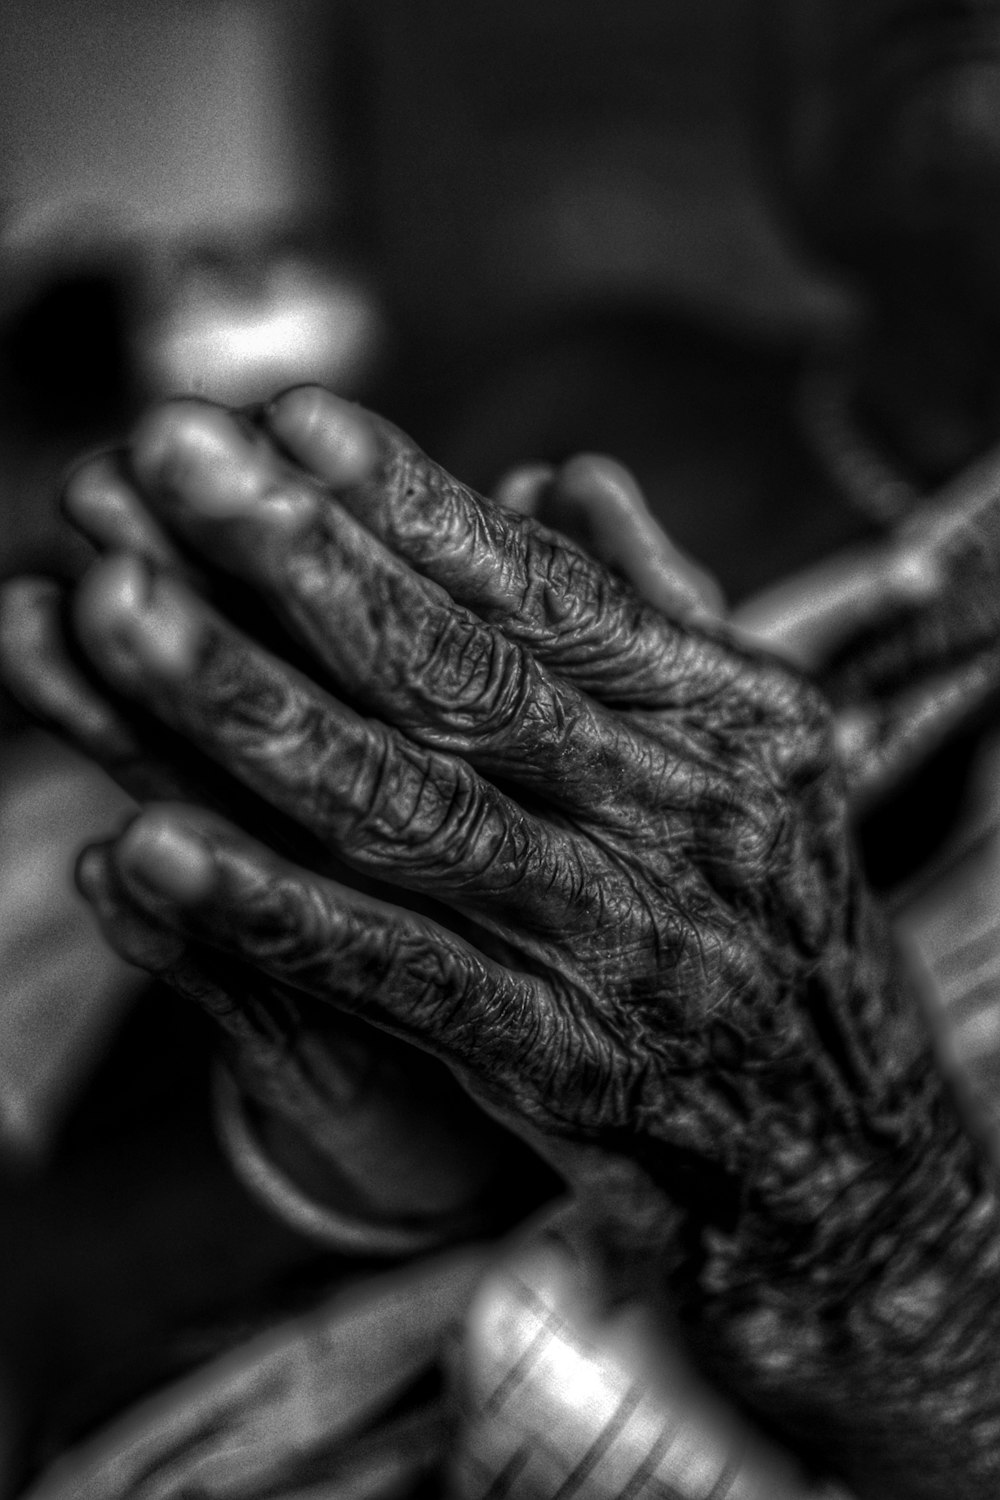 사람의 손을 촬영한 회색조 사진